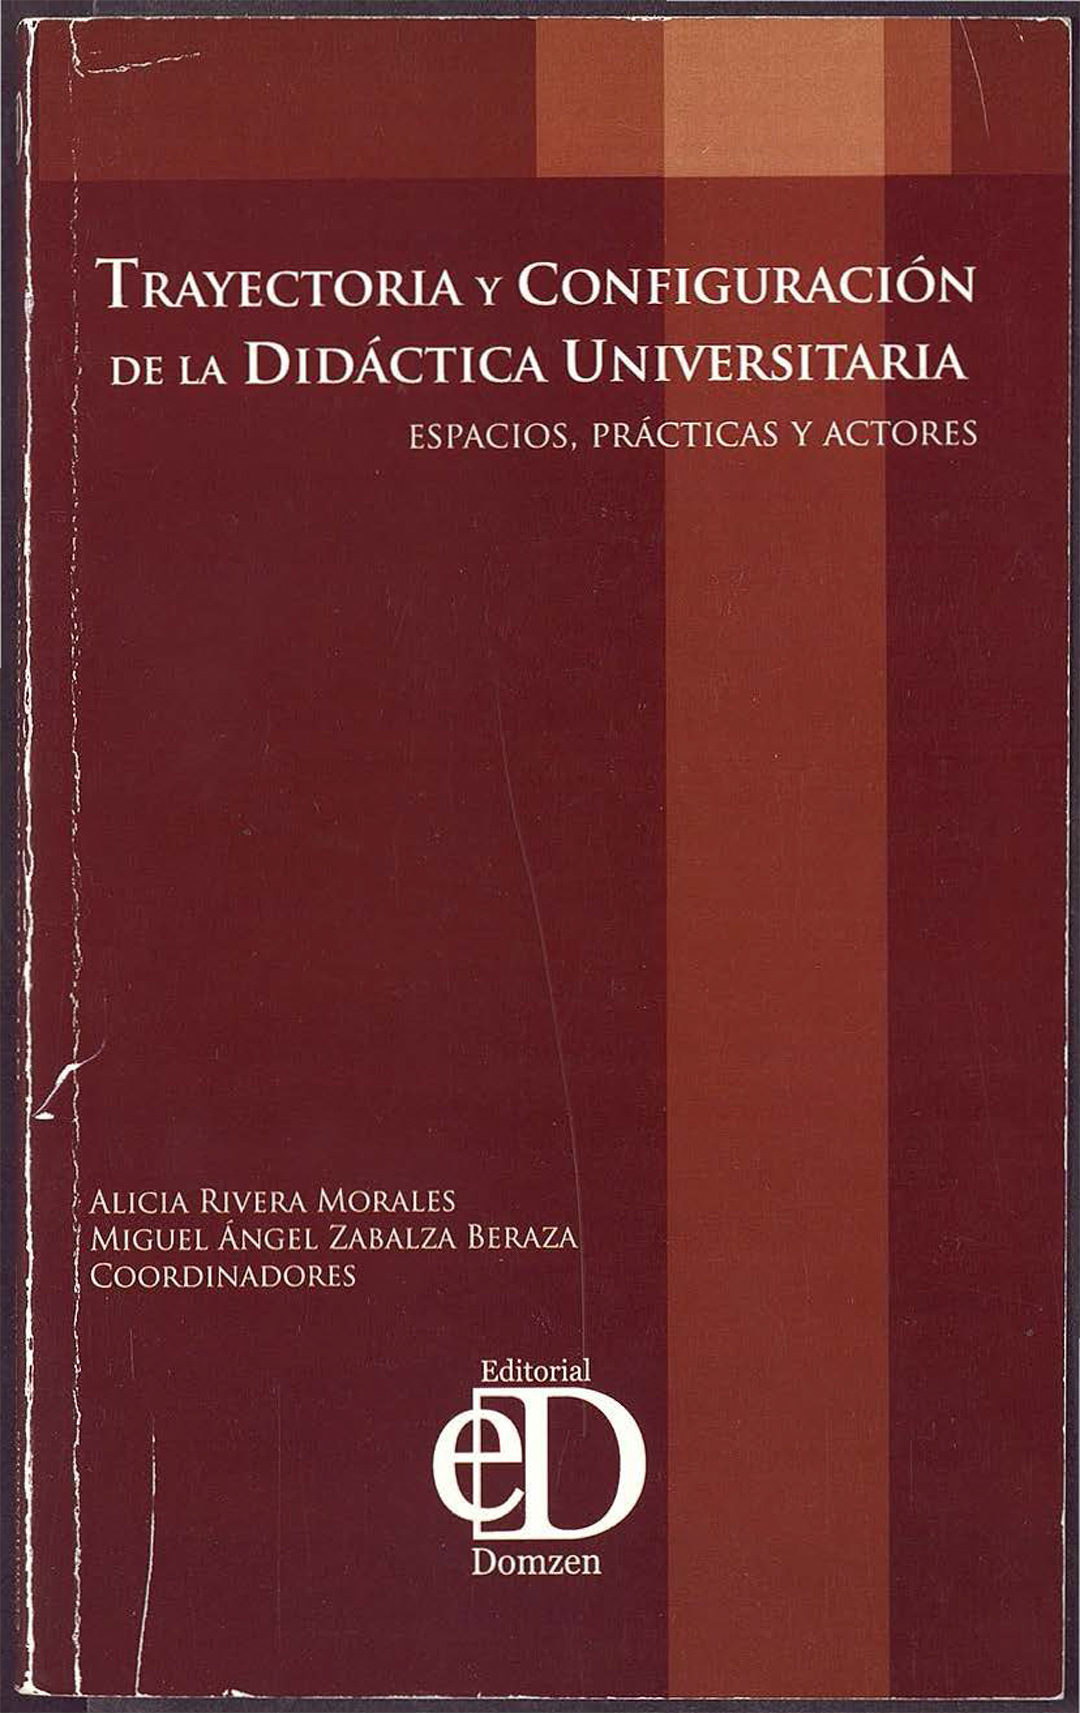 Trayectoria y Configuración de la Didáctica Universitaria (CIDU 2006)